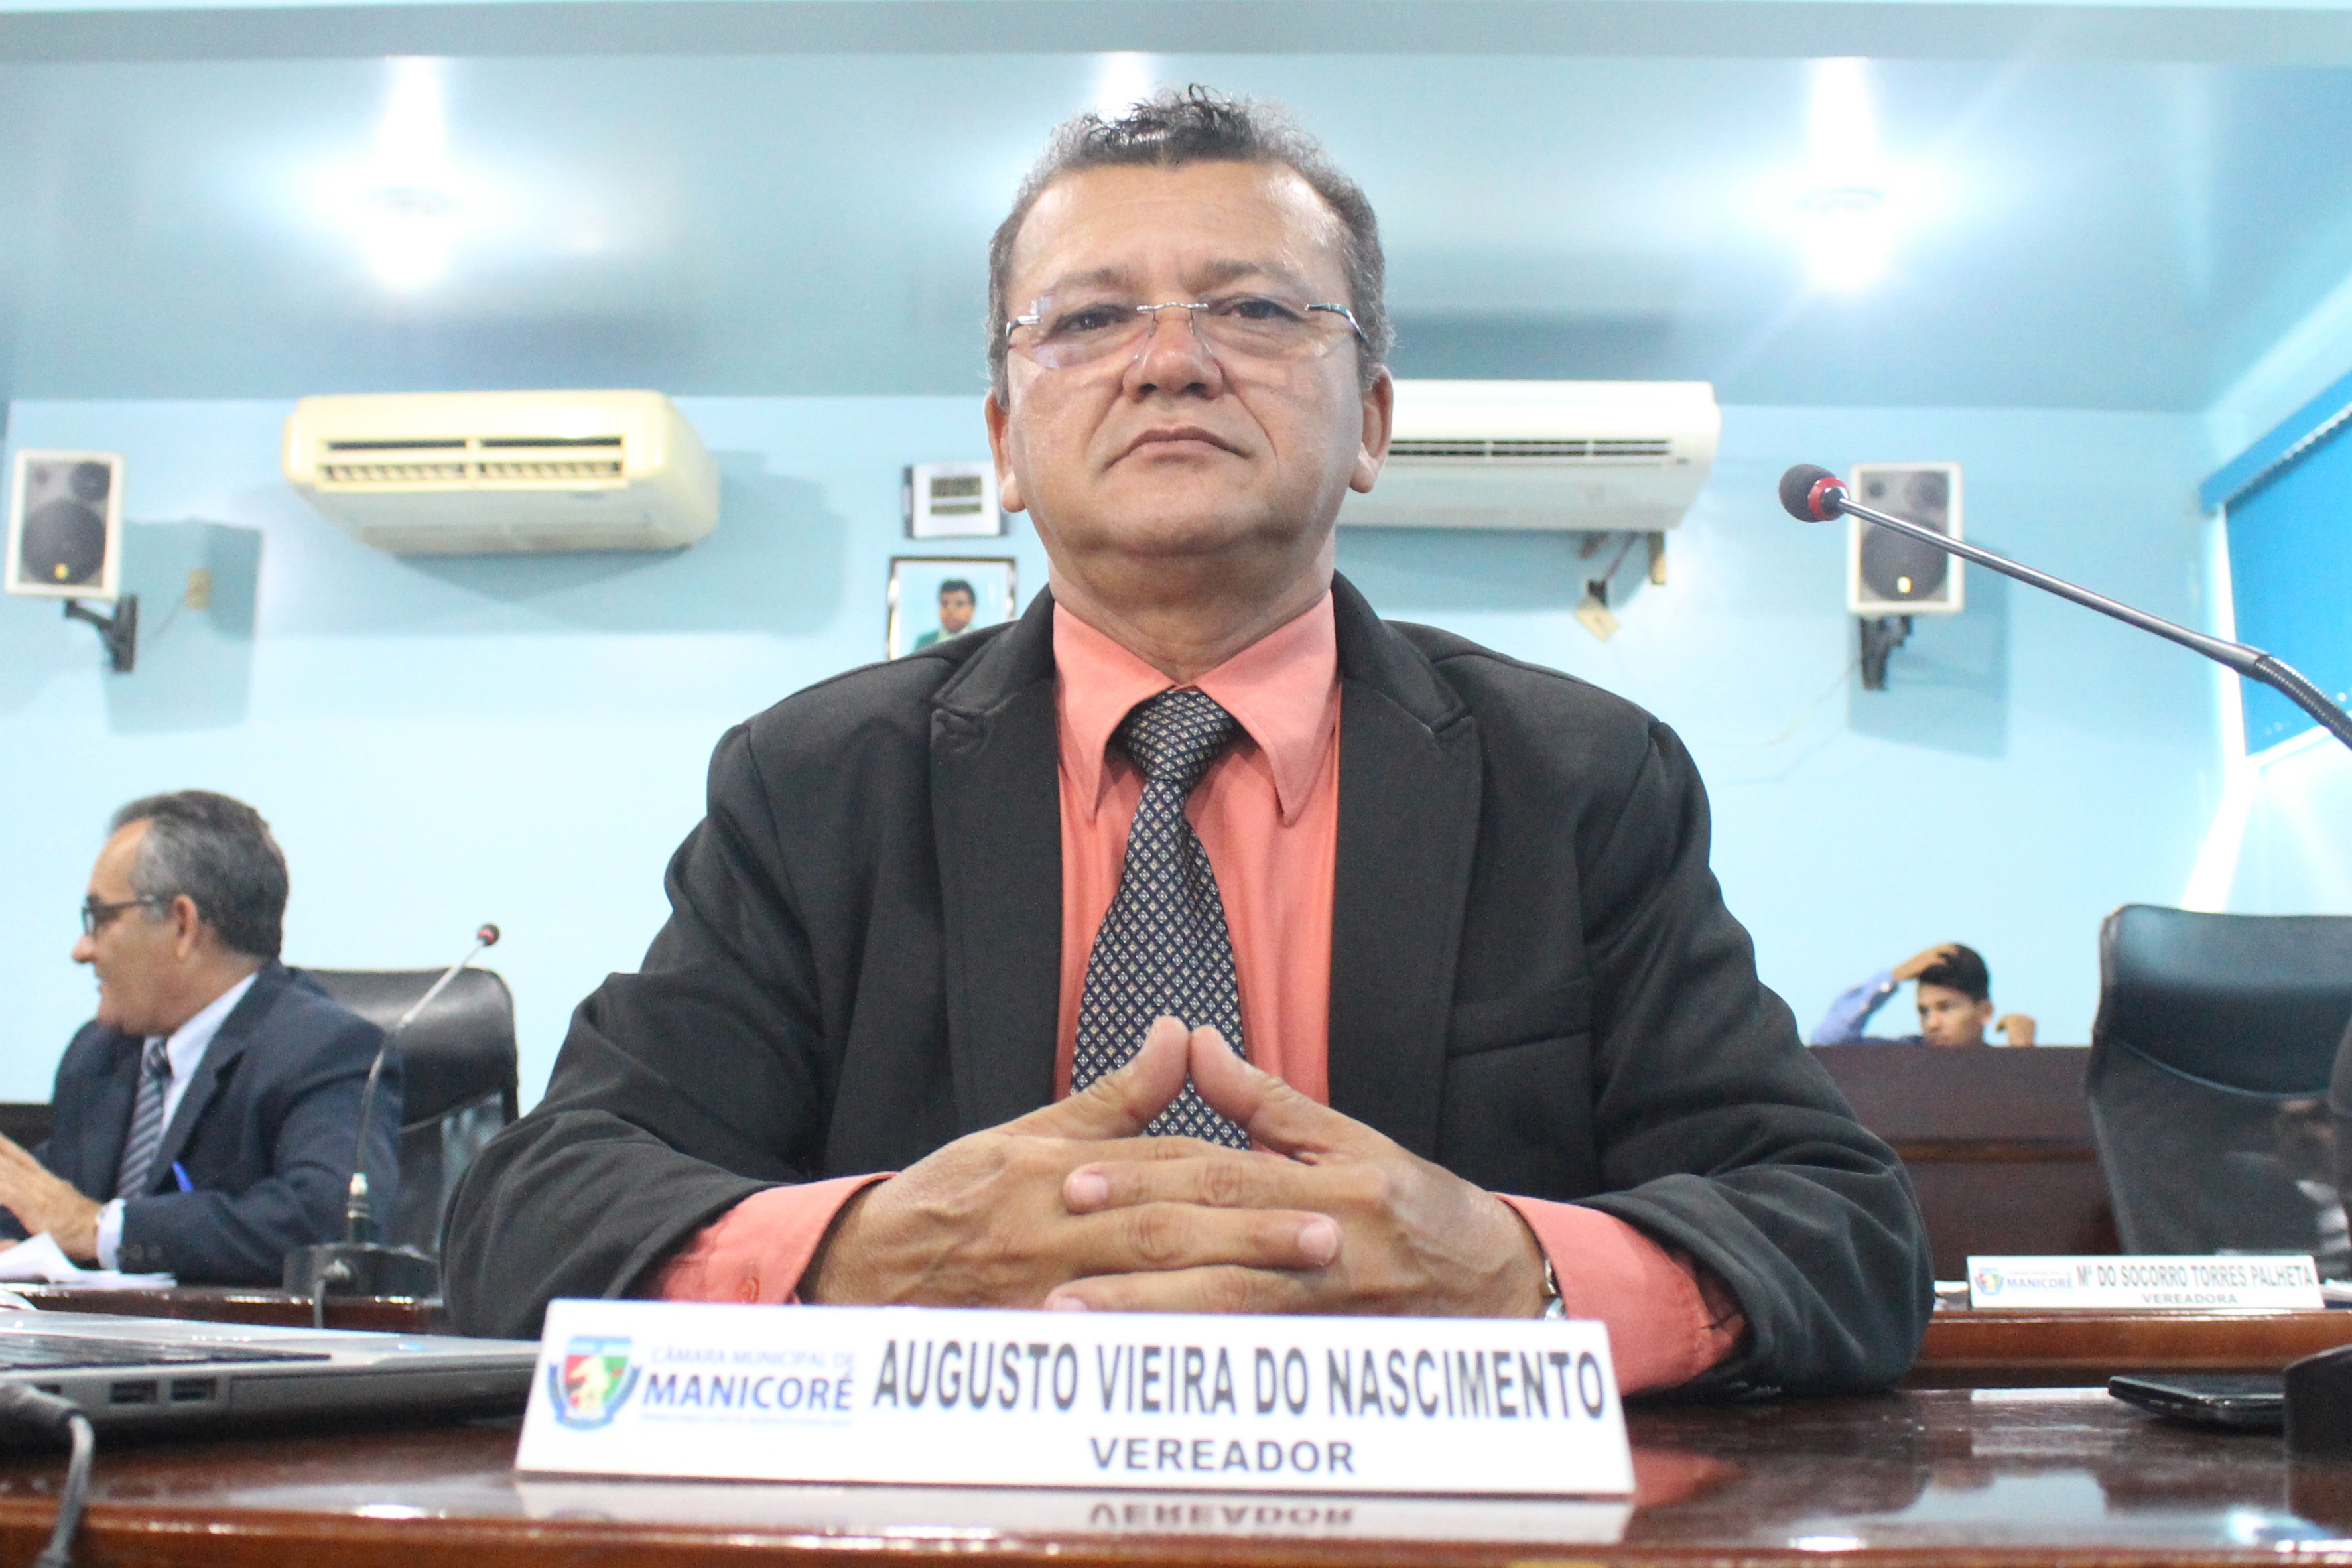 Vereador Augusto Vieira registra sua impugnação ao DNIT